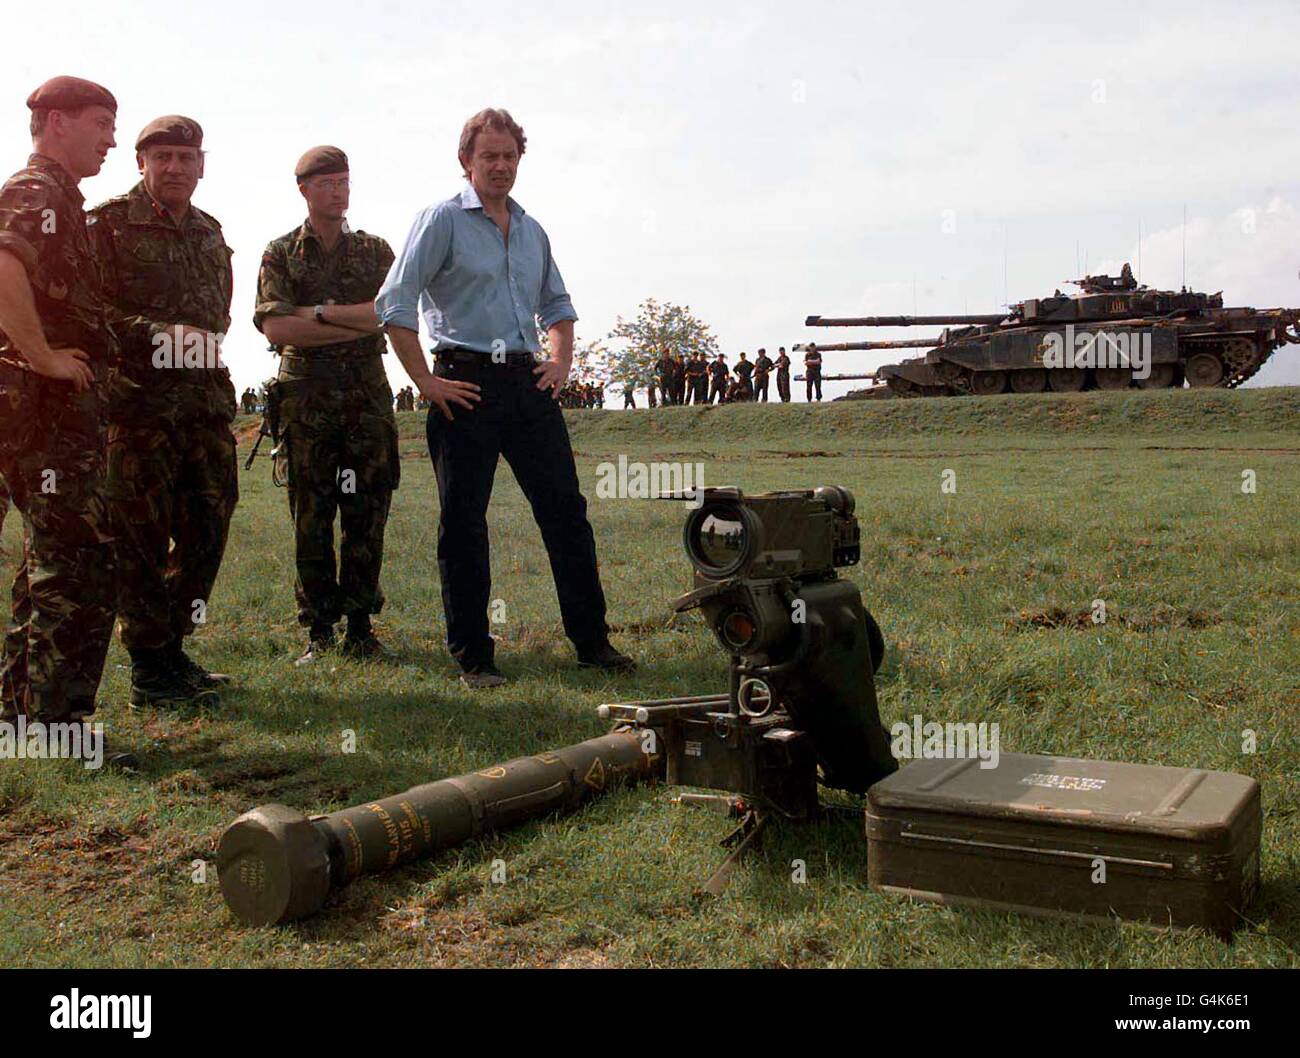 Der britische Premierminister Tony Blair sieht ein Mailänder Panzerabwehrraketen-System mit Challenger-Panzern im Hintergrund, als er im Hauptquartier der britischen Armee in der Nähe von Skopje, Mazedonien, Mitglieder der 4. Gepanzerten Bridade trifft. * Kosovo Stockfoto